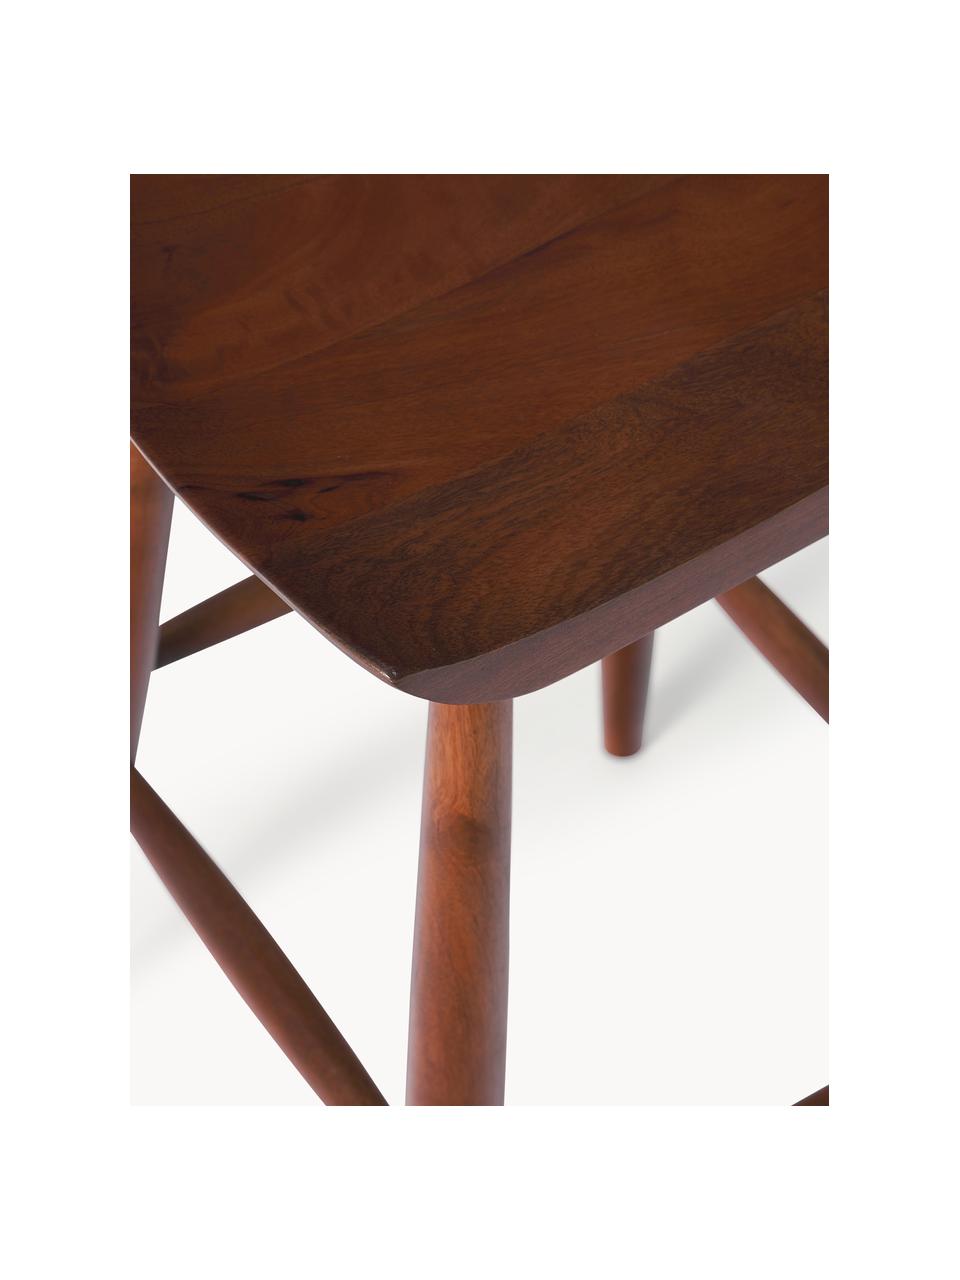 Barová židle z mangového dřeva Nino, 40 x 66 cm, Masivní lakované mangové dřevo, Mangové dřevo, hnědě lakované, Š 40 cm, V 66 cm